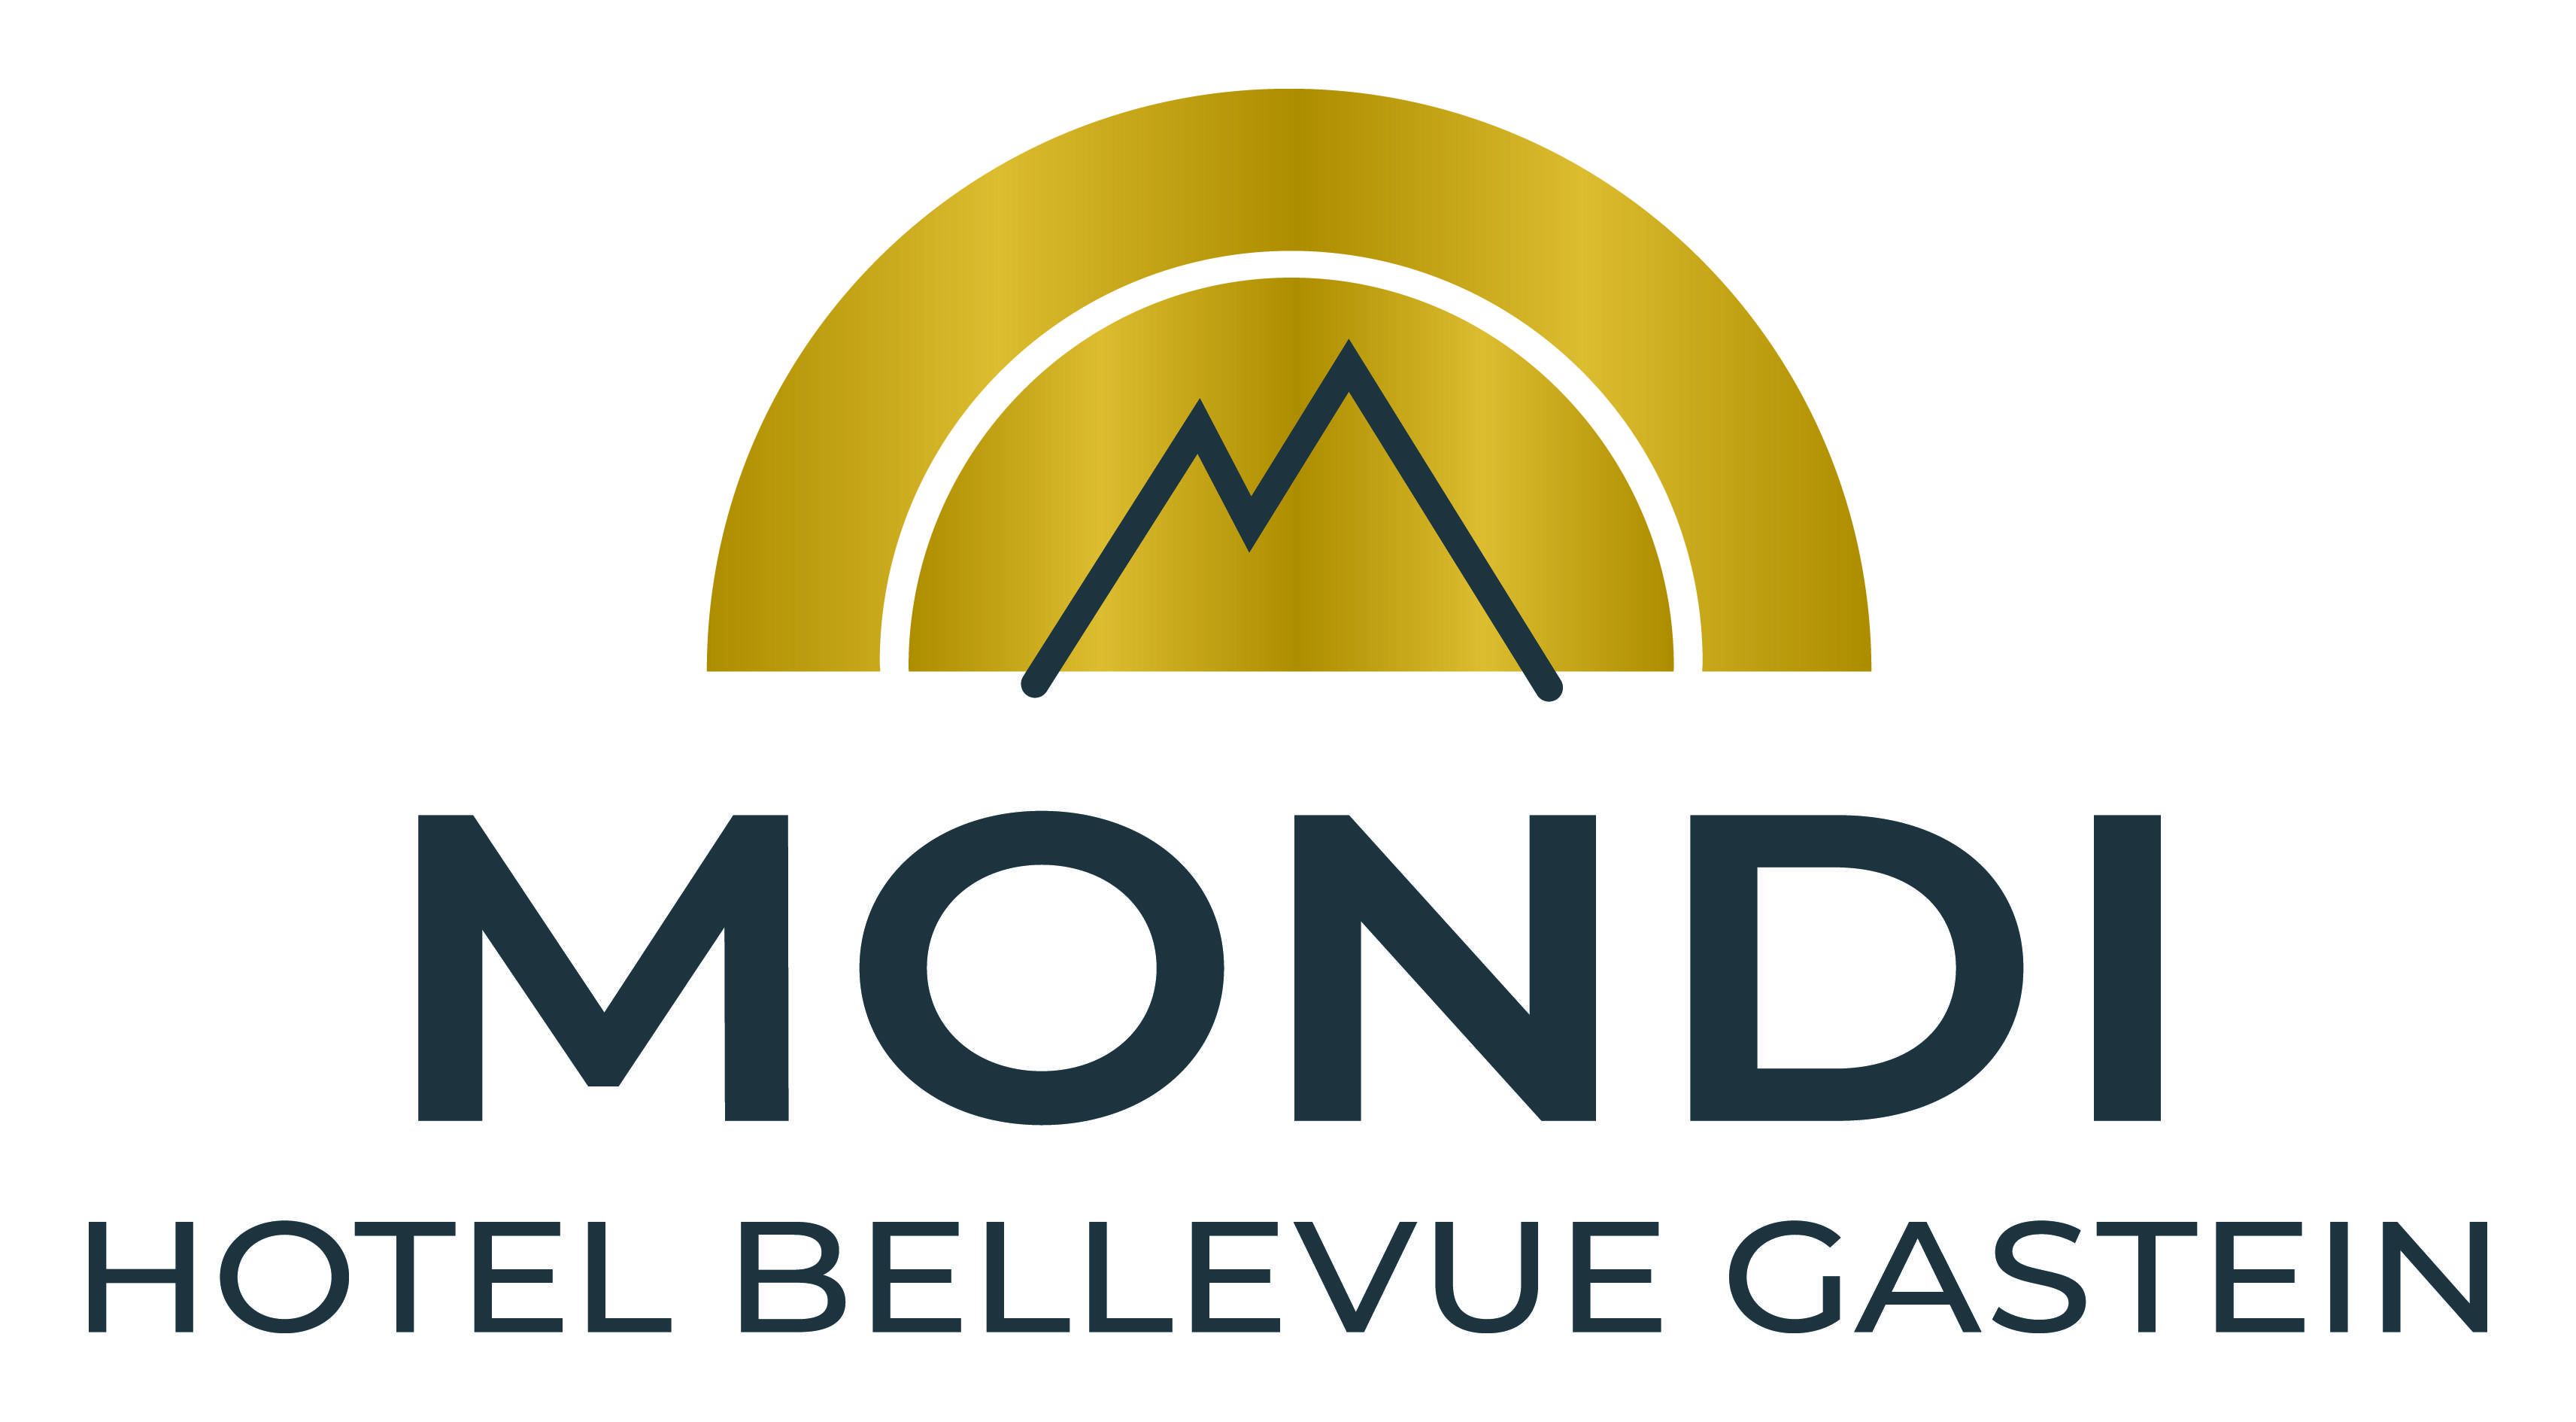 MONDI_Logo_Hotel_Bellevue_Gastein